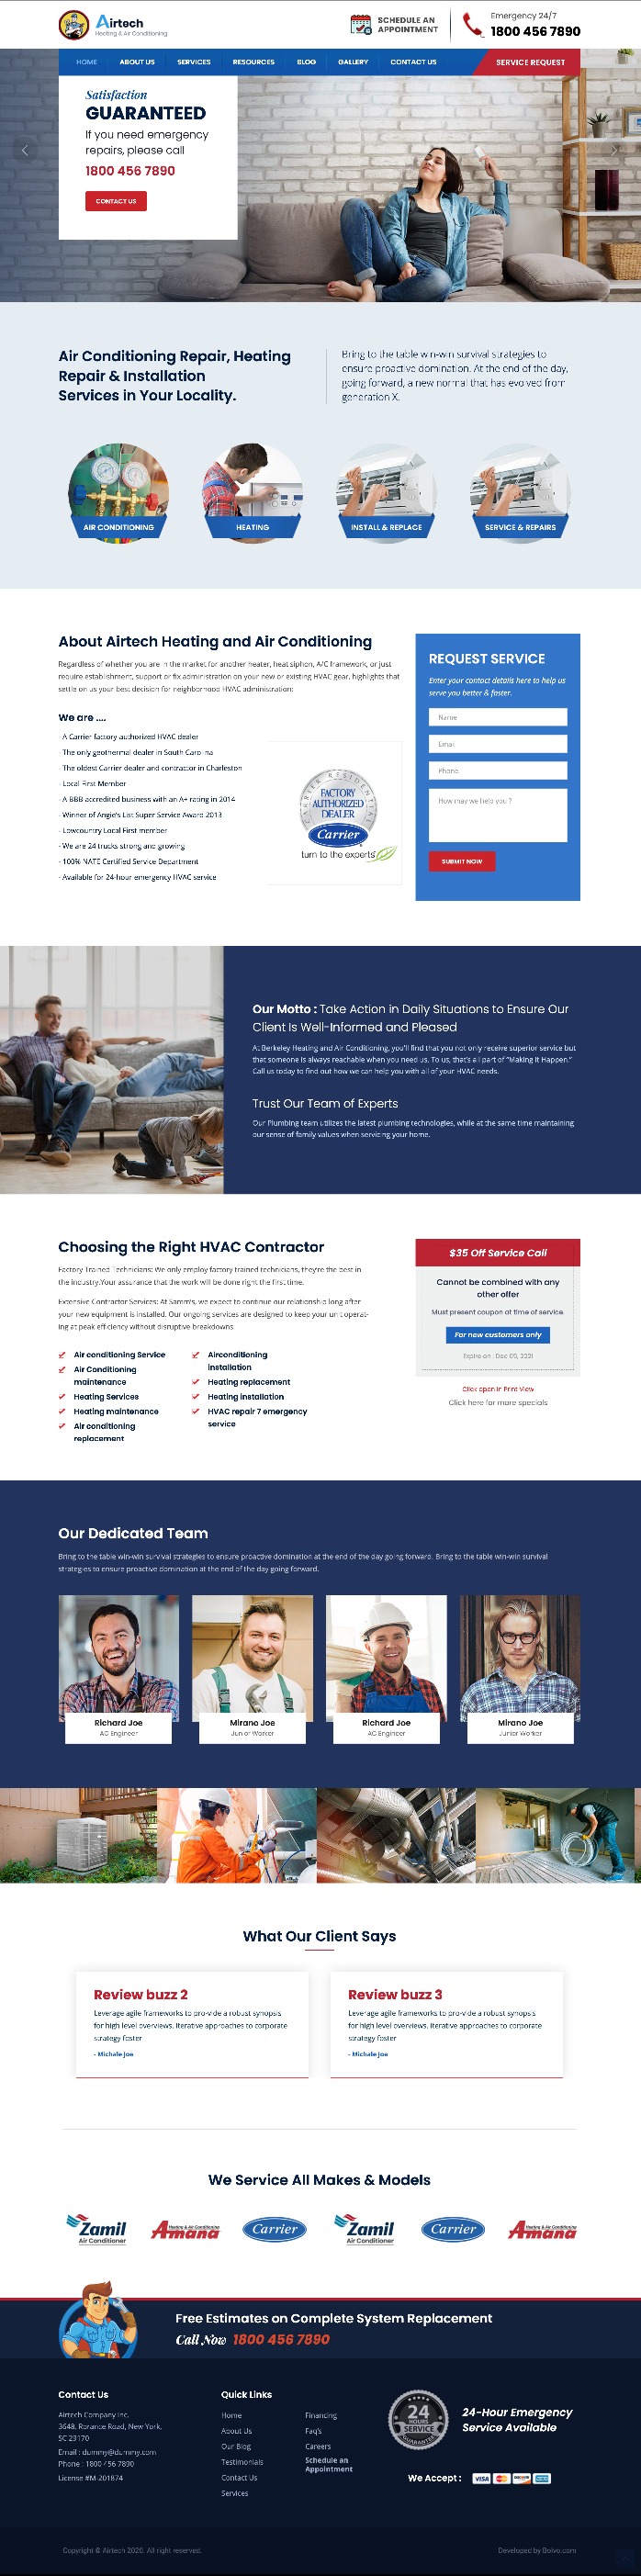 Mẫu Website Giới Thiệu Dịch Vụ Sửa Chữa Vệ Sinh Máy Lạnh Airtech Home 2